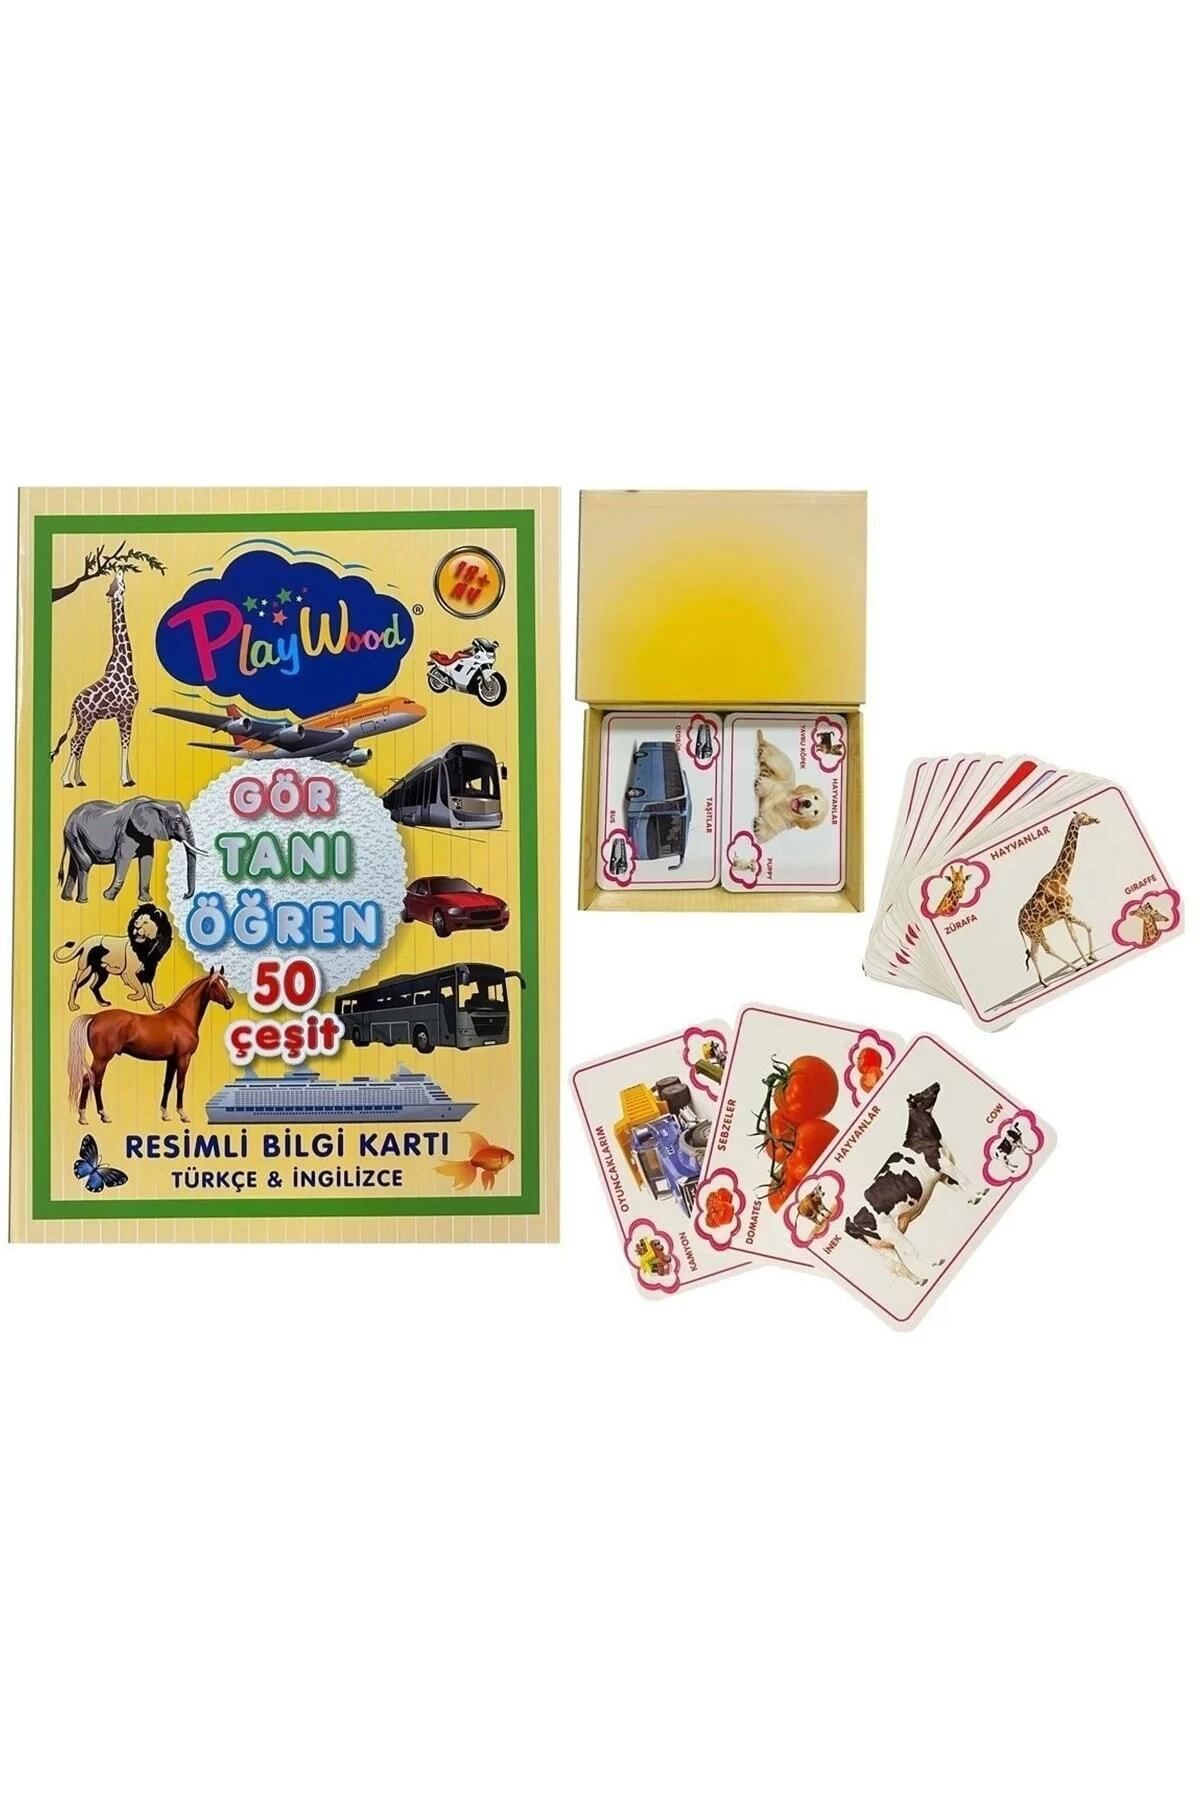 Özgüner Oyuncak Çocuk Eğitici Ve Eğlenceli Resimli Gör-tanı-öğren Kartlar Oyun Seti